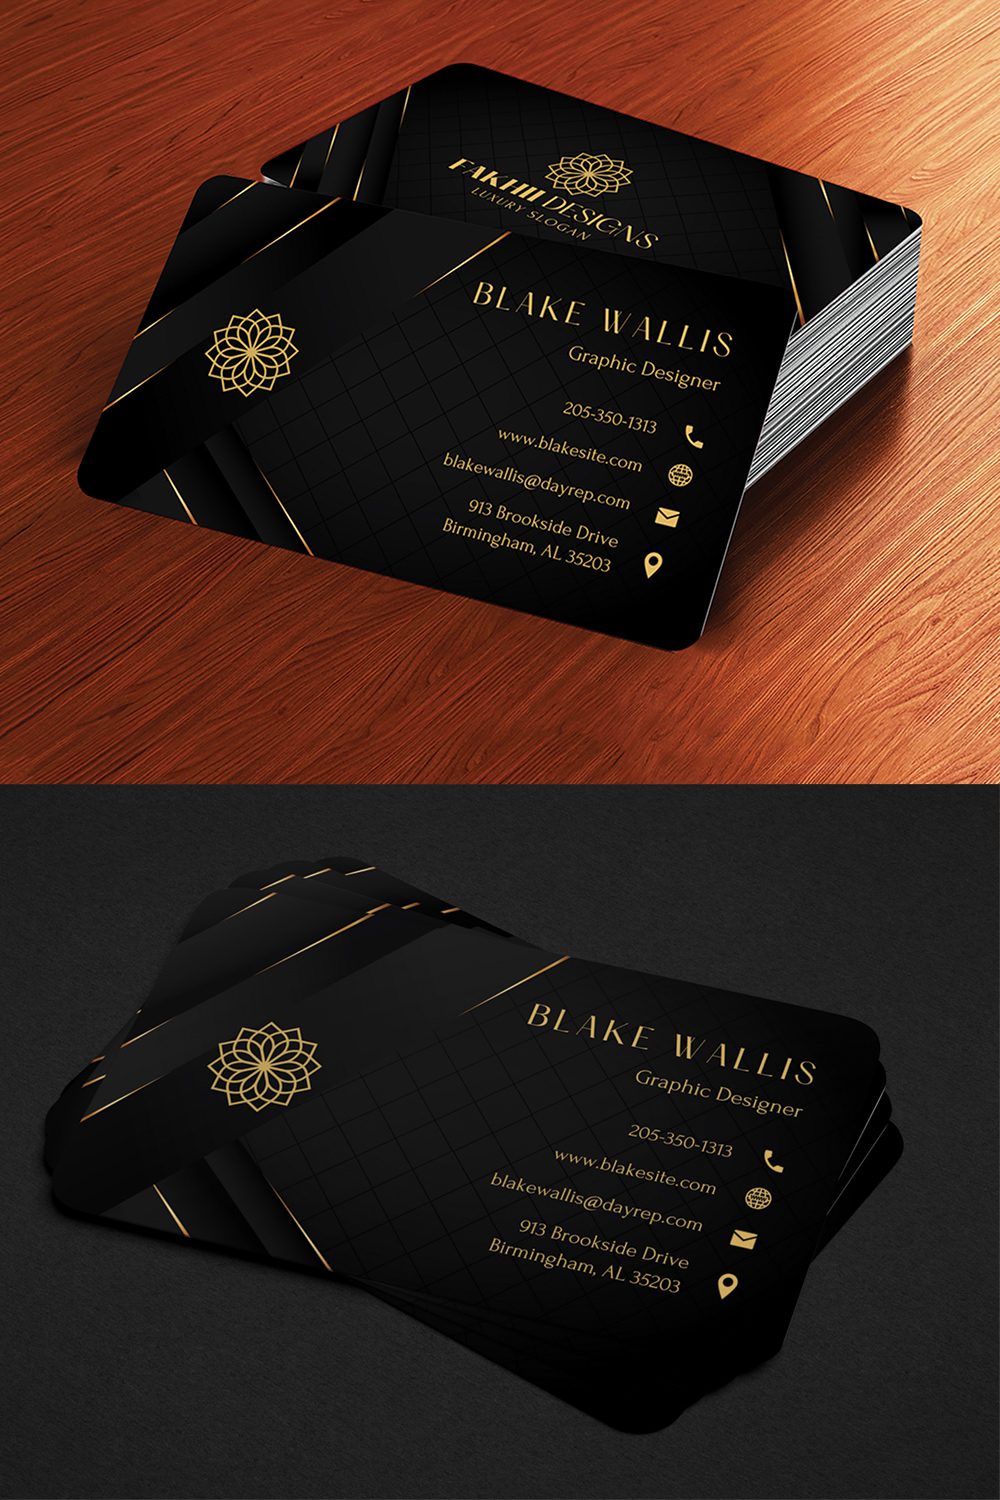 Black & Gold Modern Elegant Business Card Design | Aesthetic Editable Business Card | DIY Business Card | Canva Templates | Canva Business Cards Template | Business Card Template pinterest preview image.